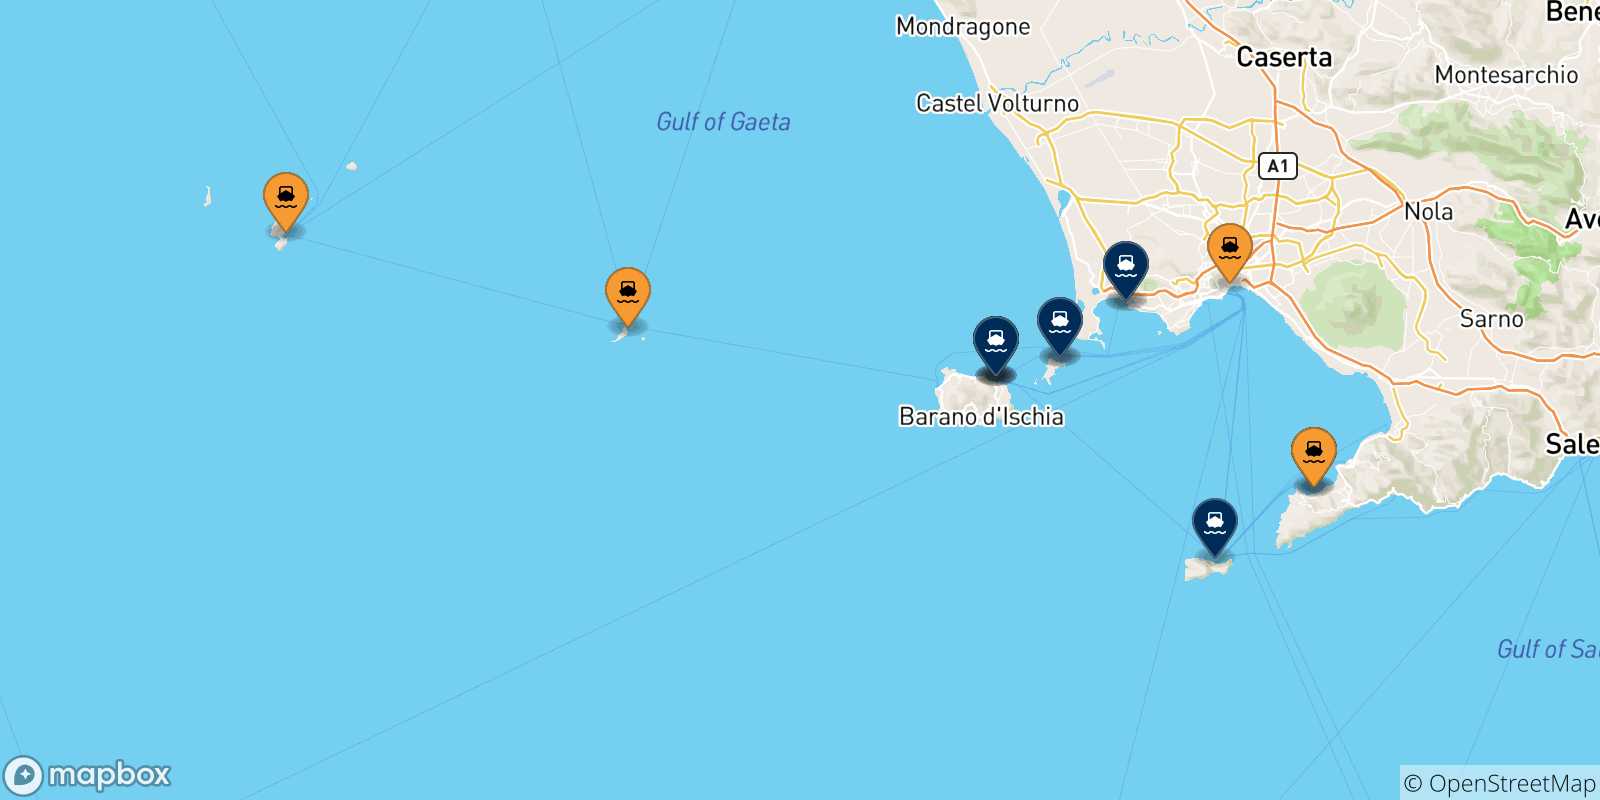 Mappa delle possibili rotte tra l'Italia e il Golfo Di Napoli